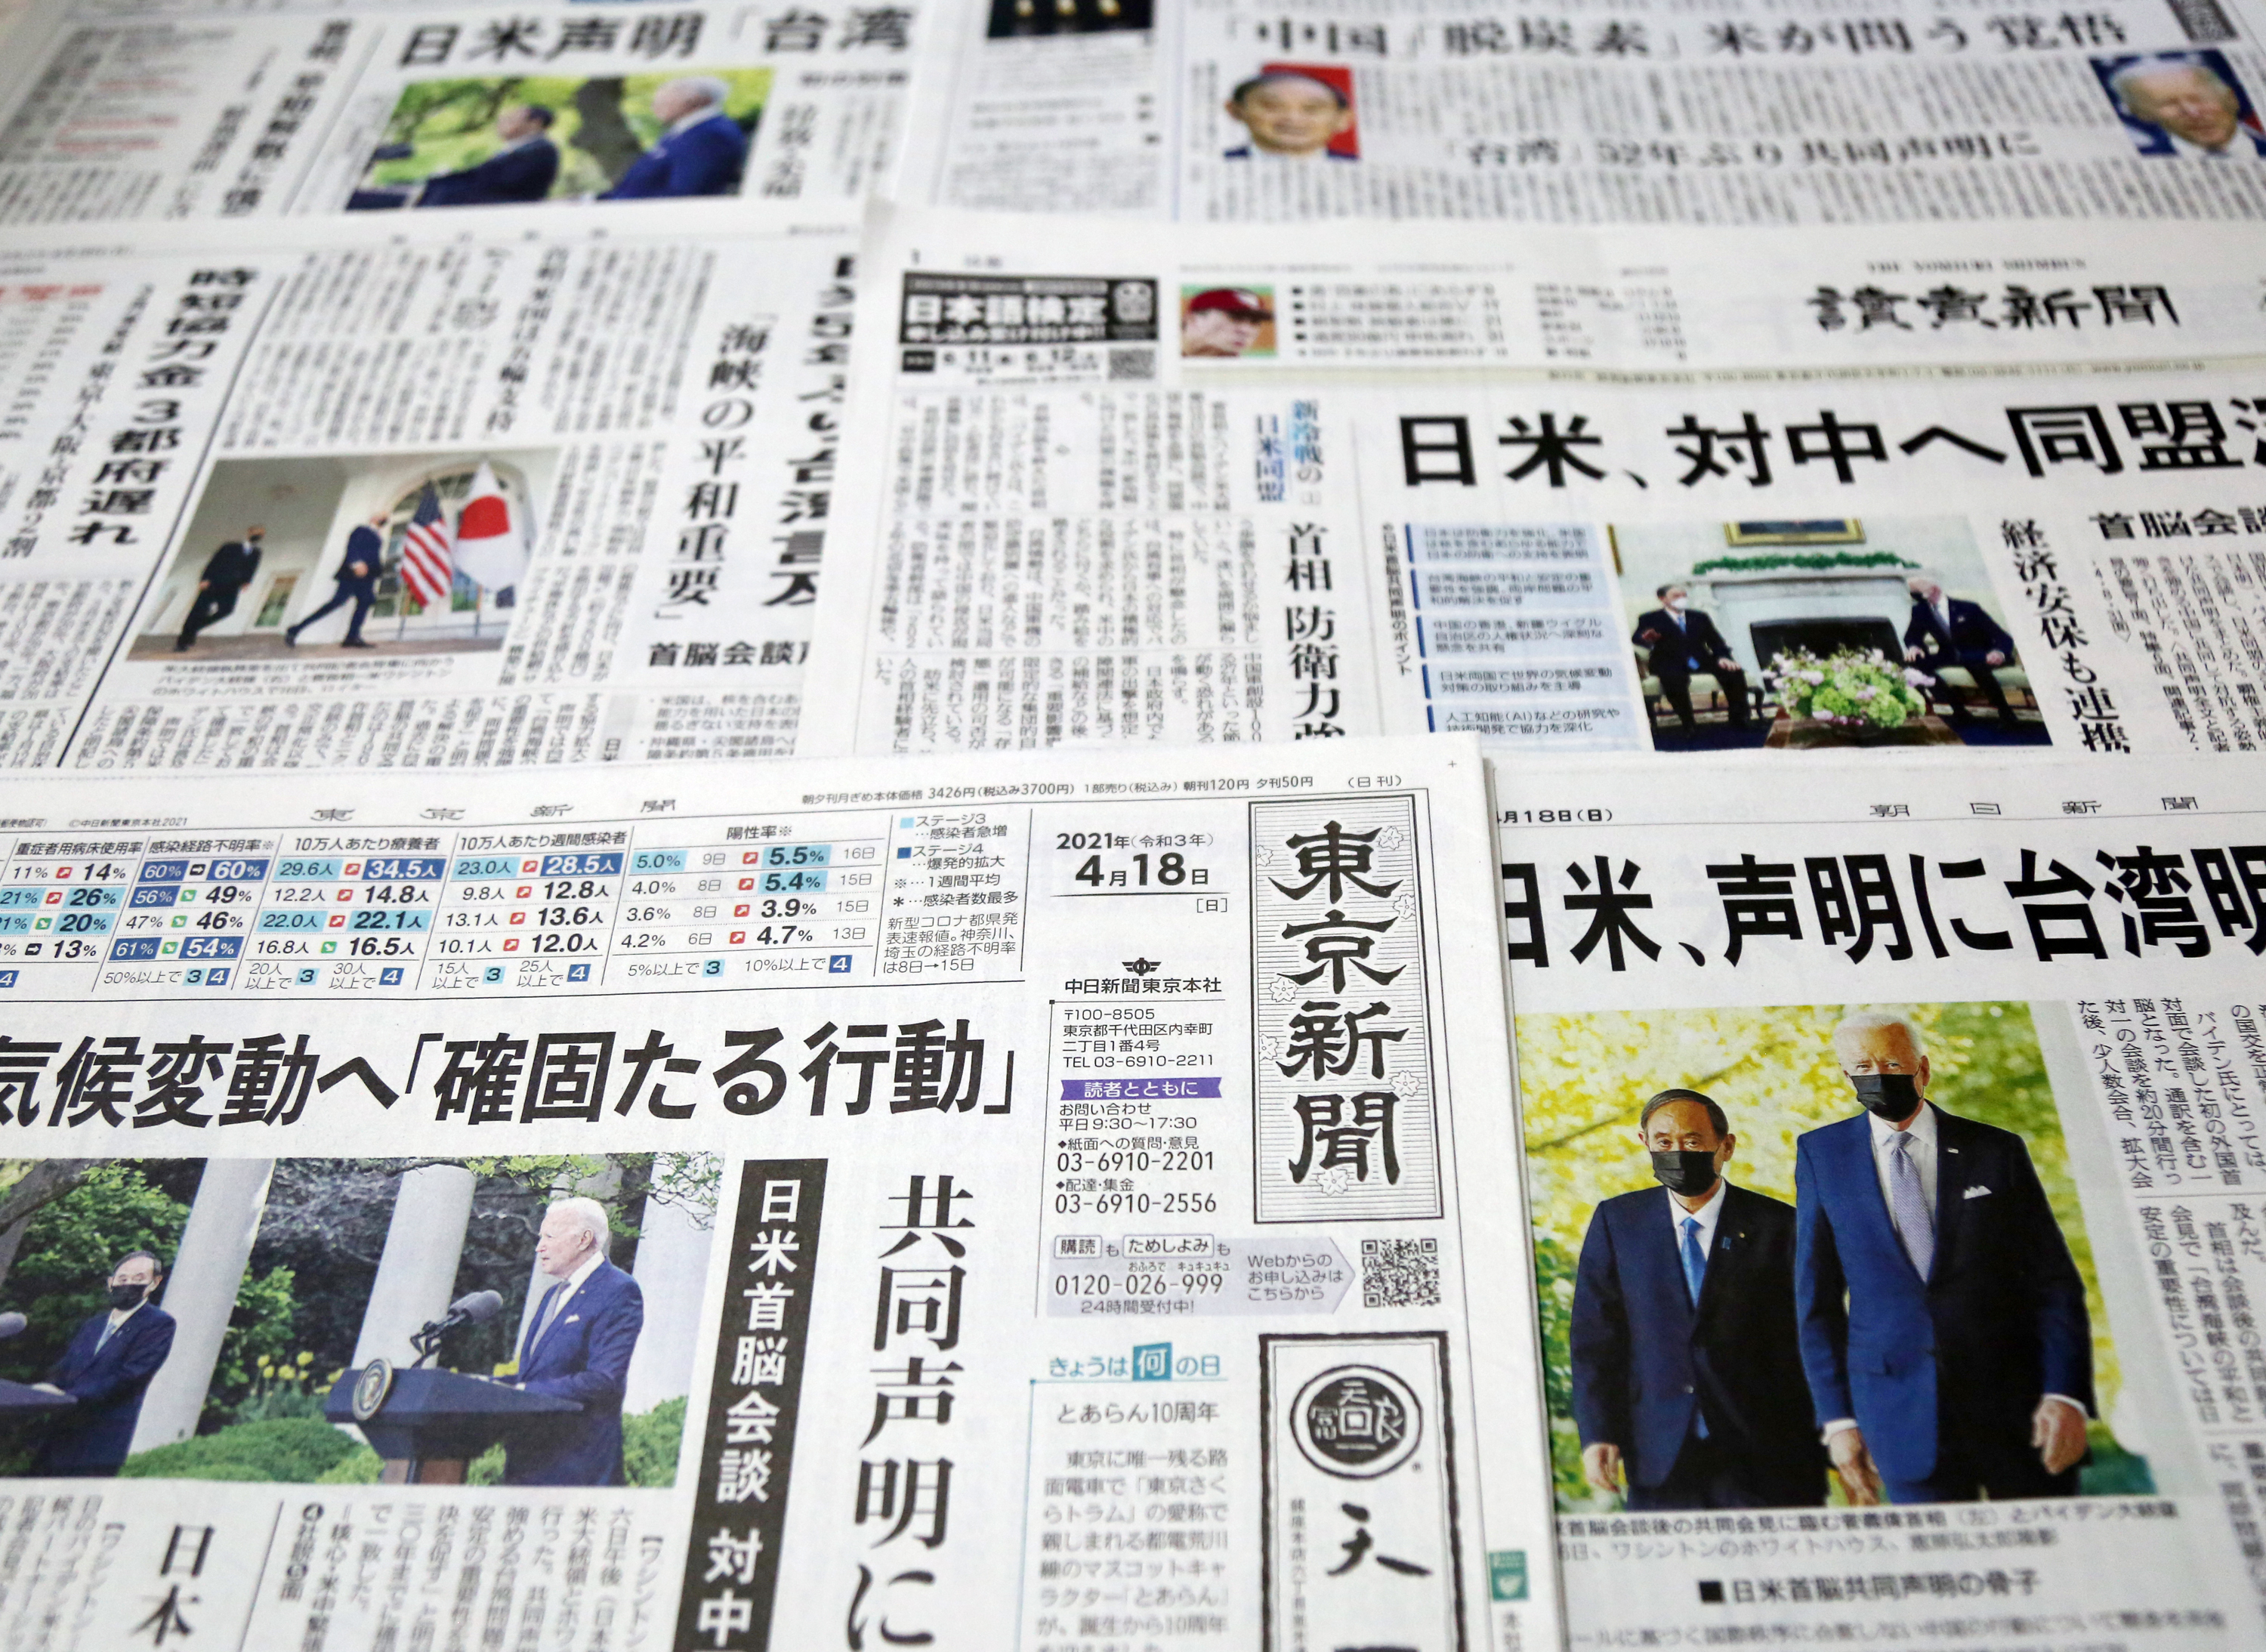 일본 주요 일간지 5월 18일자 1면에 조 바이든 미국 대통령과 스가 요시히데 일본 총리의 정상회담 및 공동성명에 관한 소식이 실려 있다. 〈도쿄=연합뉴스〉